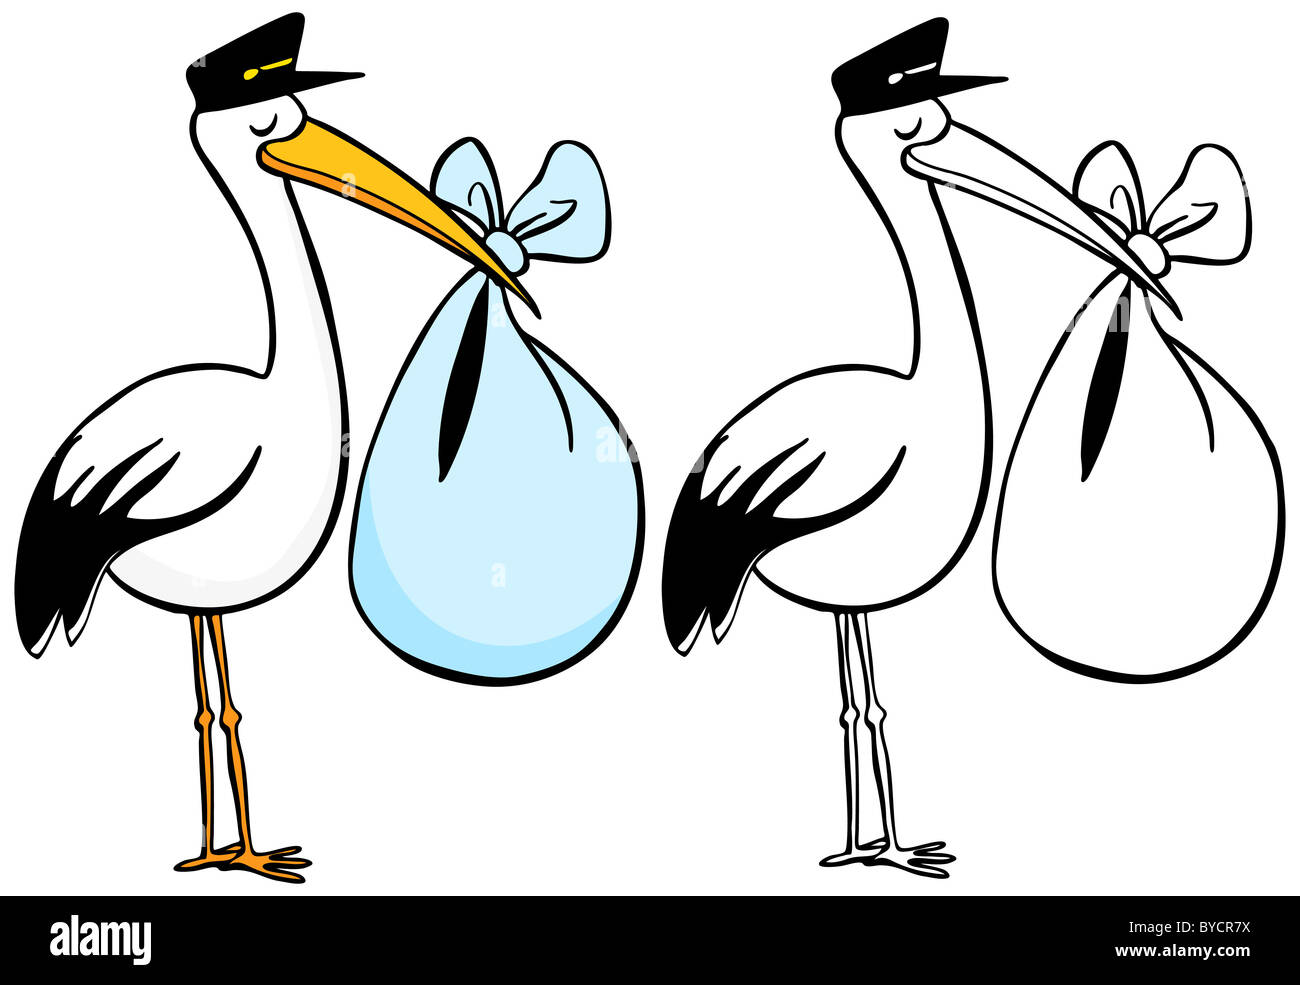 Karikatur von einem Storch liefert ein Baby - Farbe und schwarz / weiß-Versionen. Stockfoto